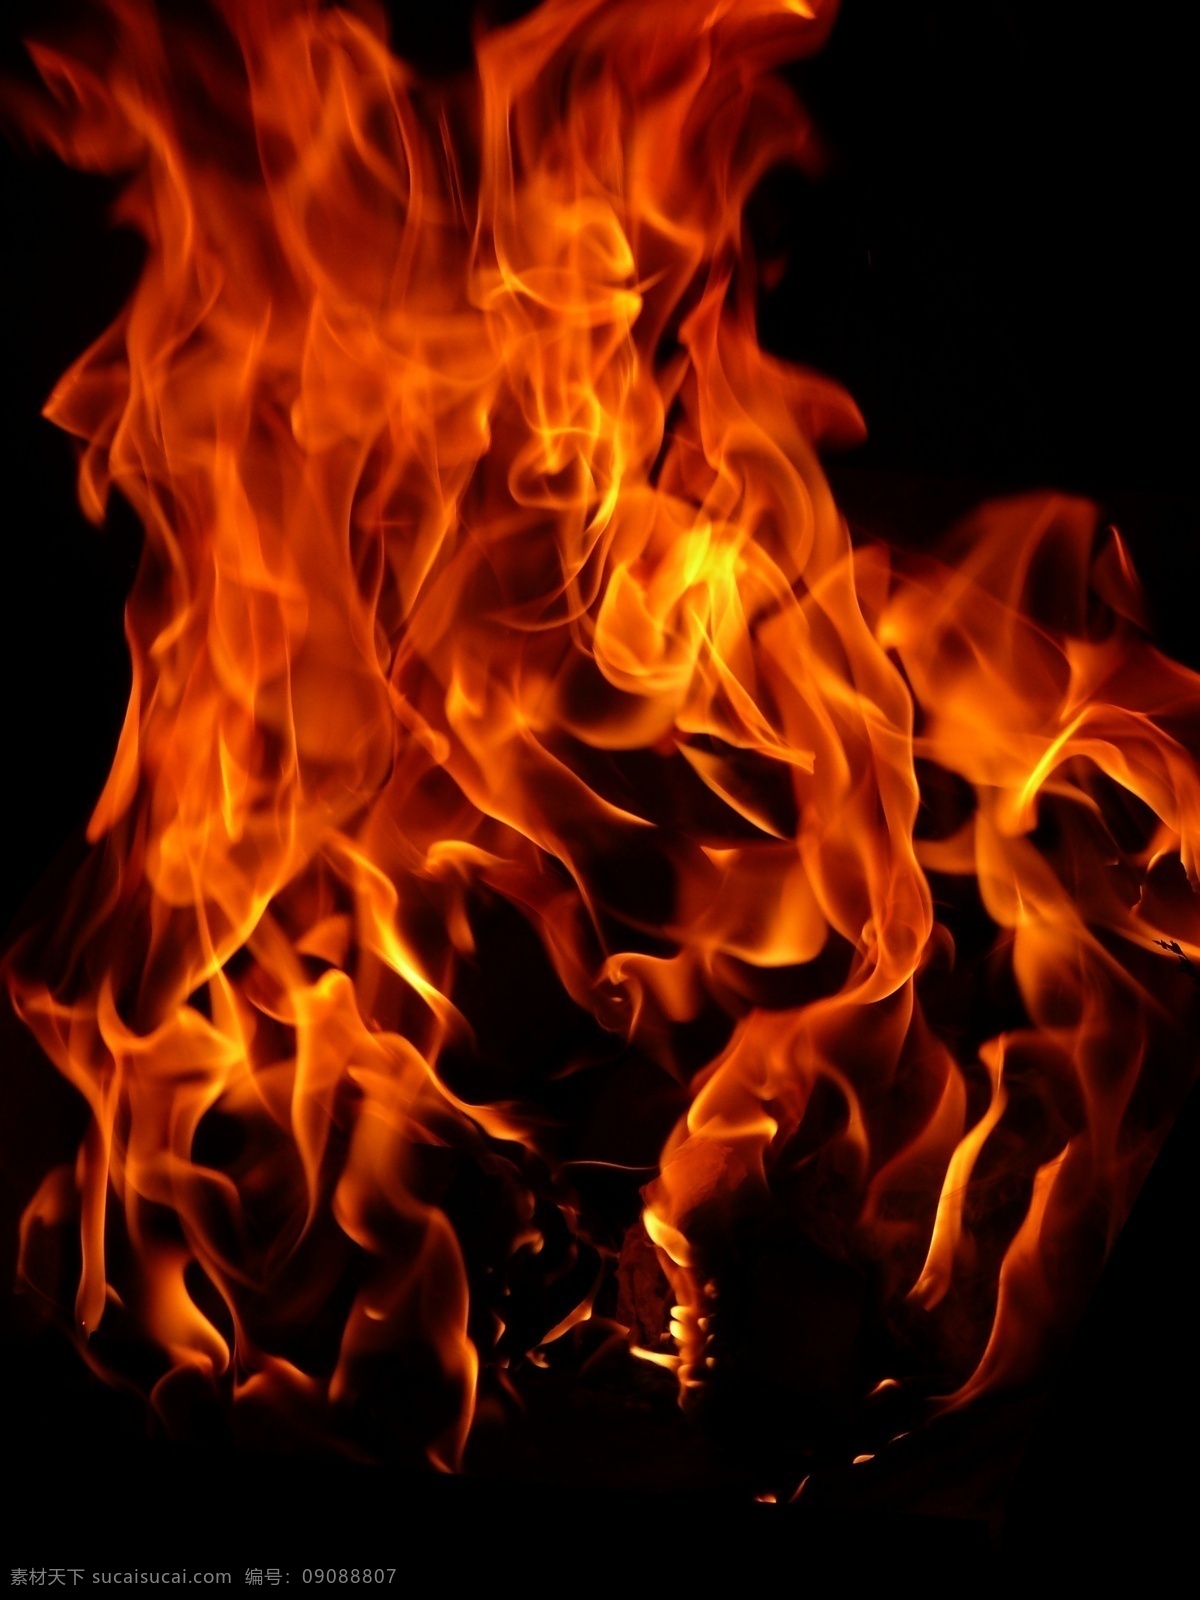 火焰素材 火 大火 火焰 ps素材 红色火焰 分层